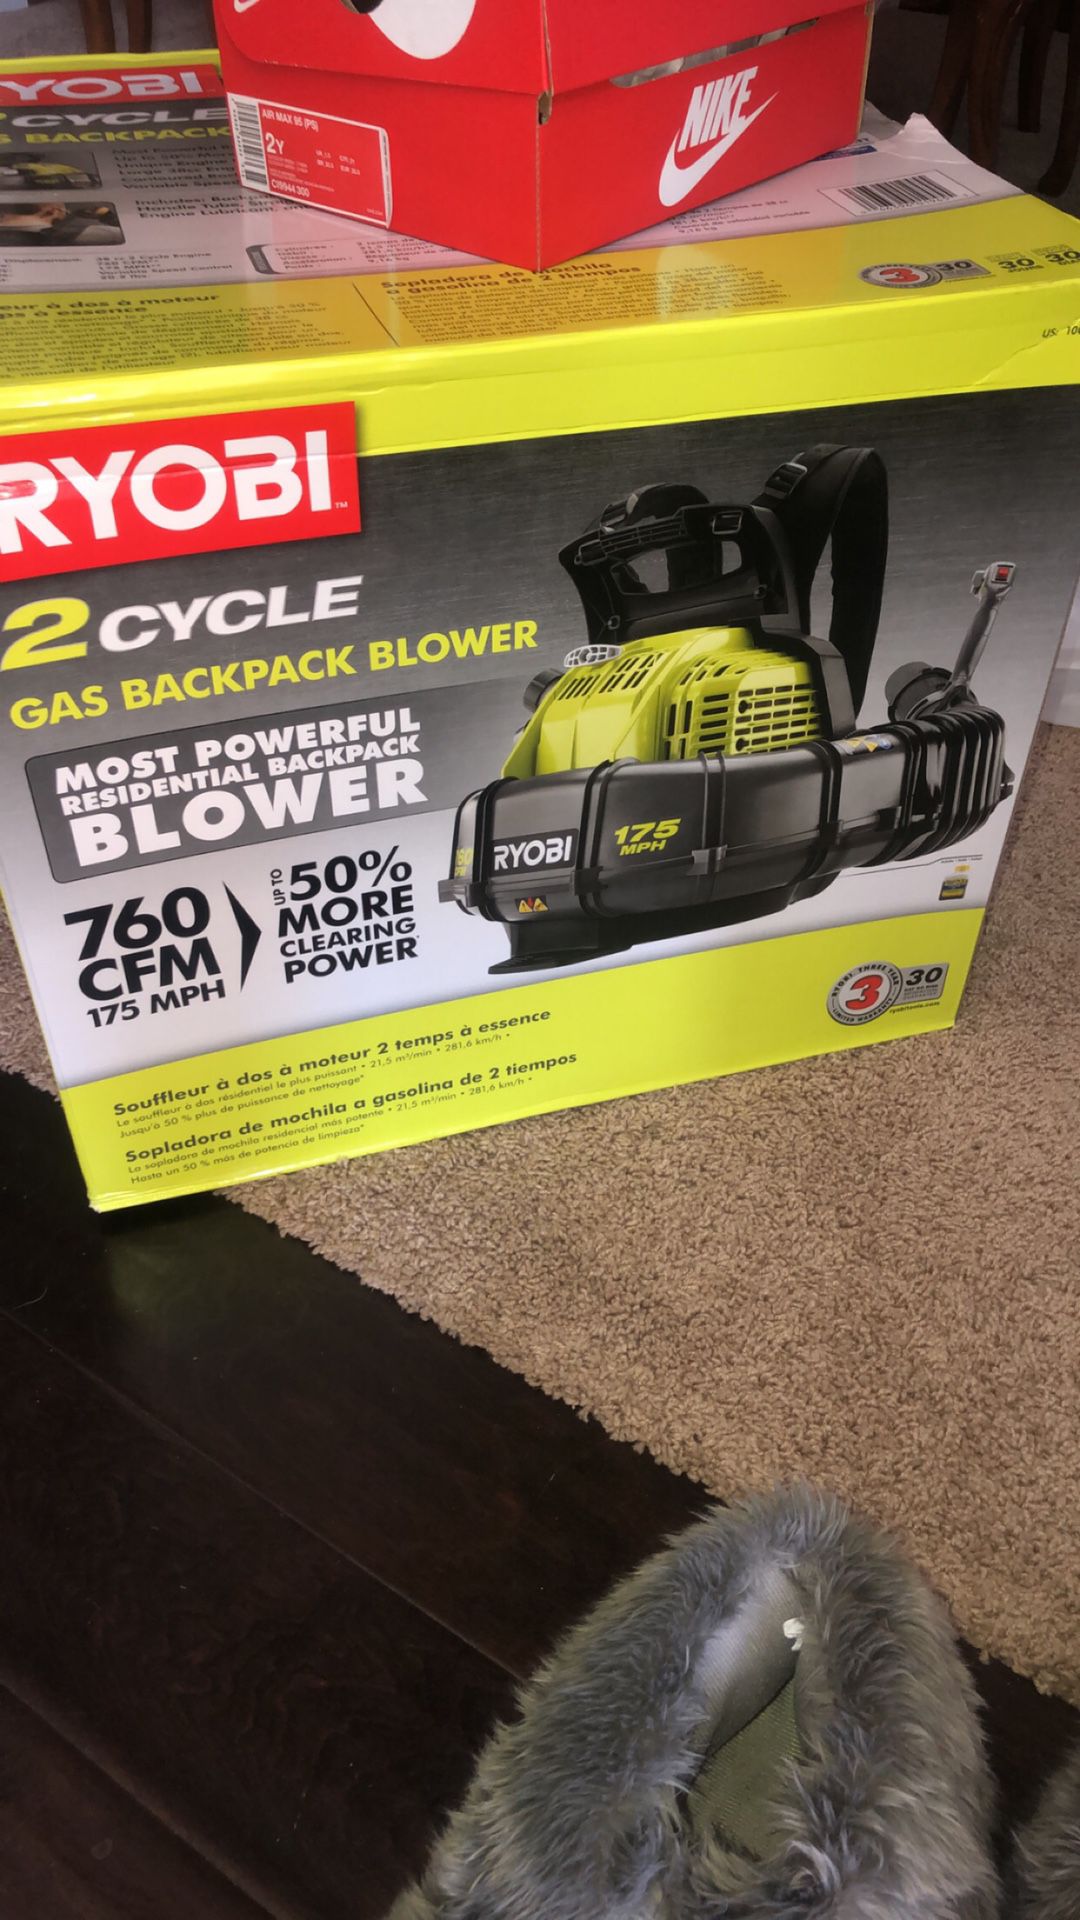 Ryobi leaf blower